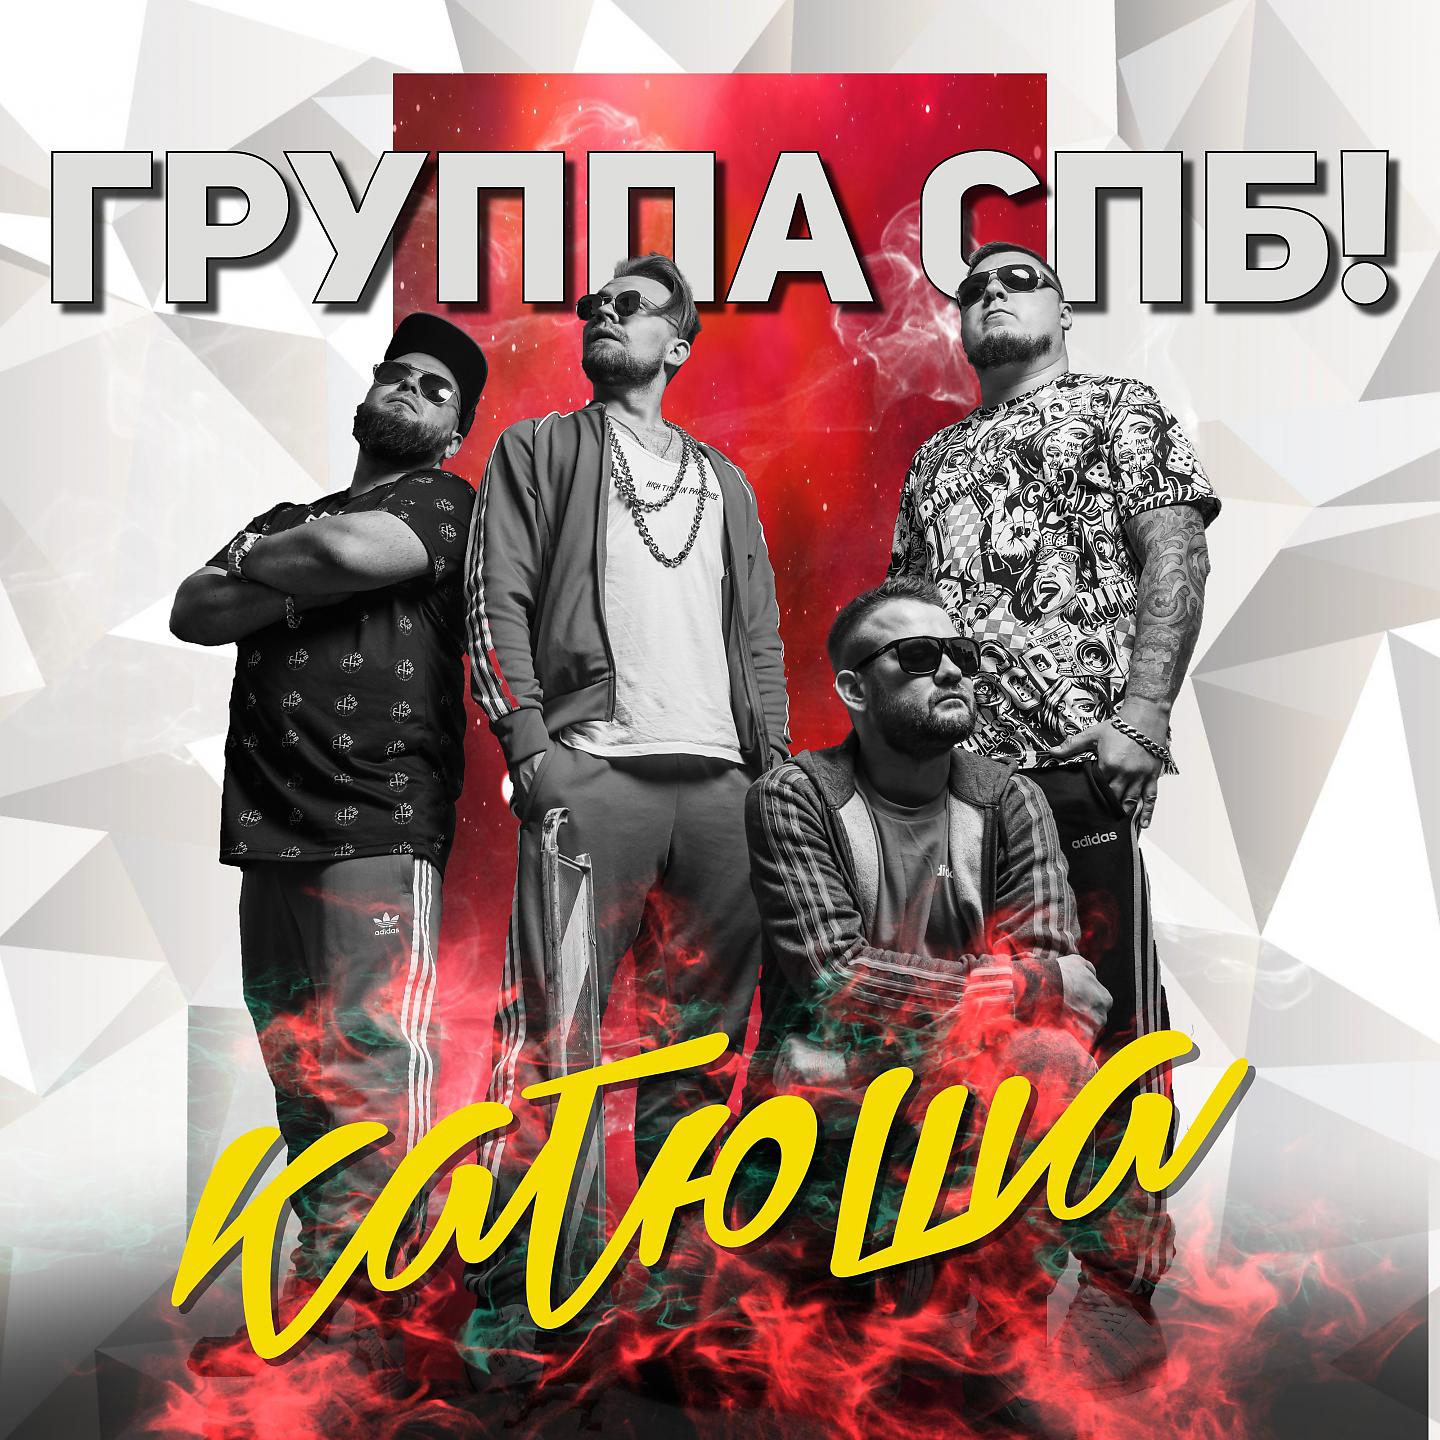 Постер альбома Катюша